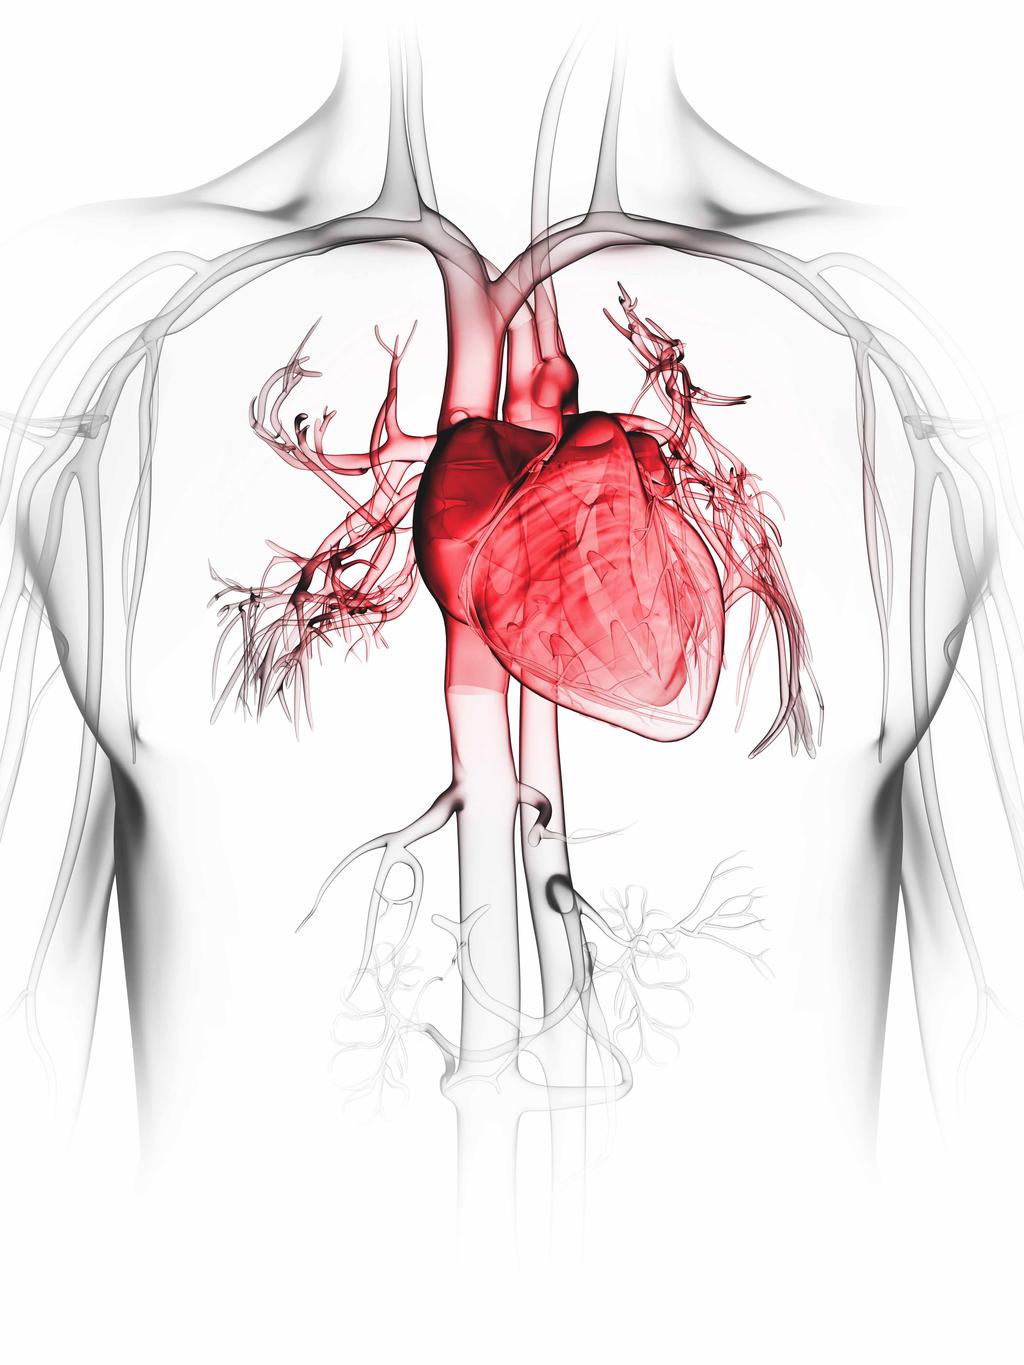 심혈관 진단을 위한 맞춤형 패키지 성인부터 소아까지, 심장 검진에 특화된 섬세한 트랜스듀서 라인업